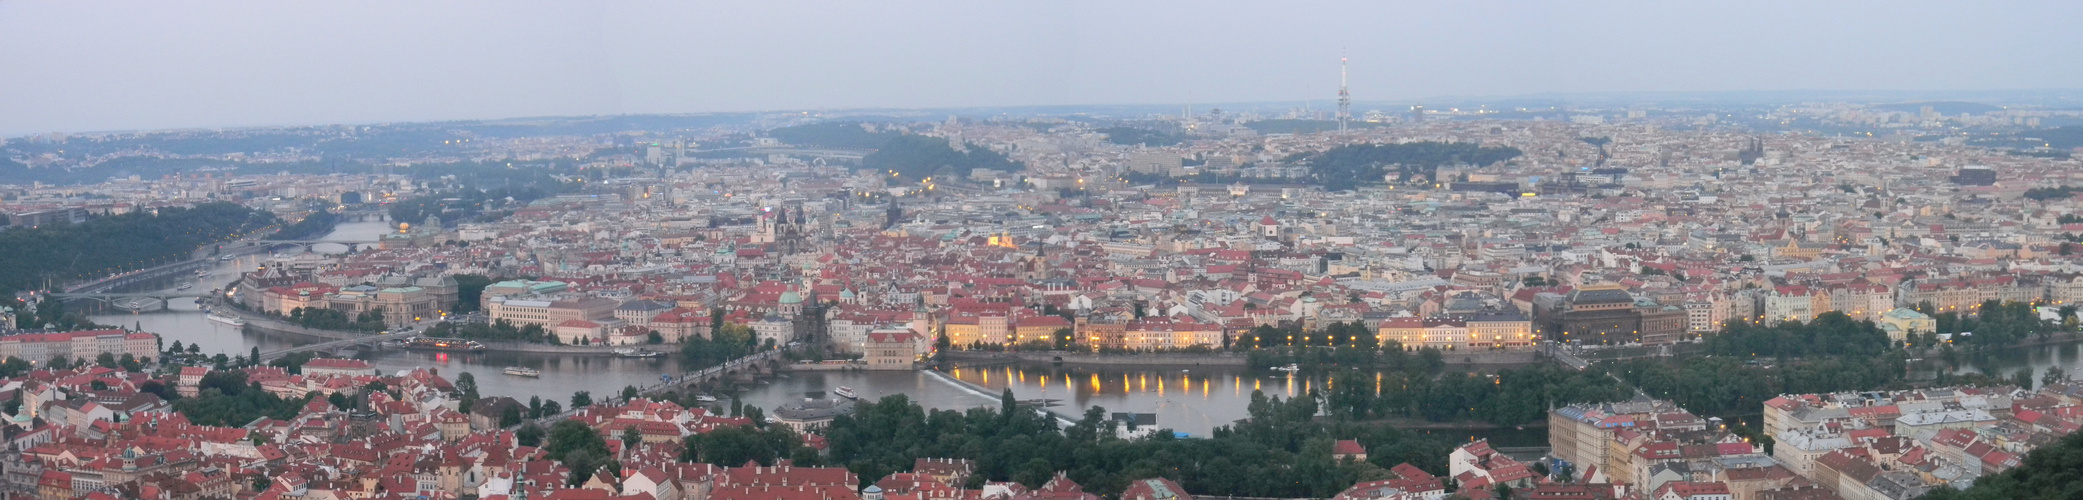 Praha at Sunset I